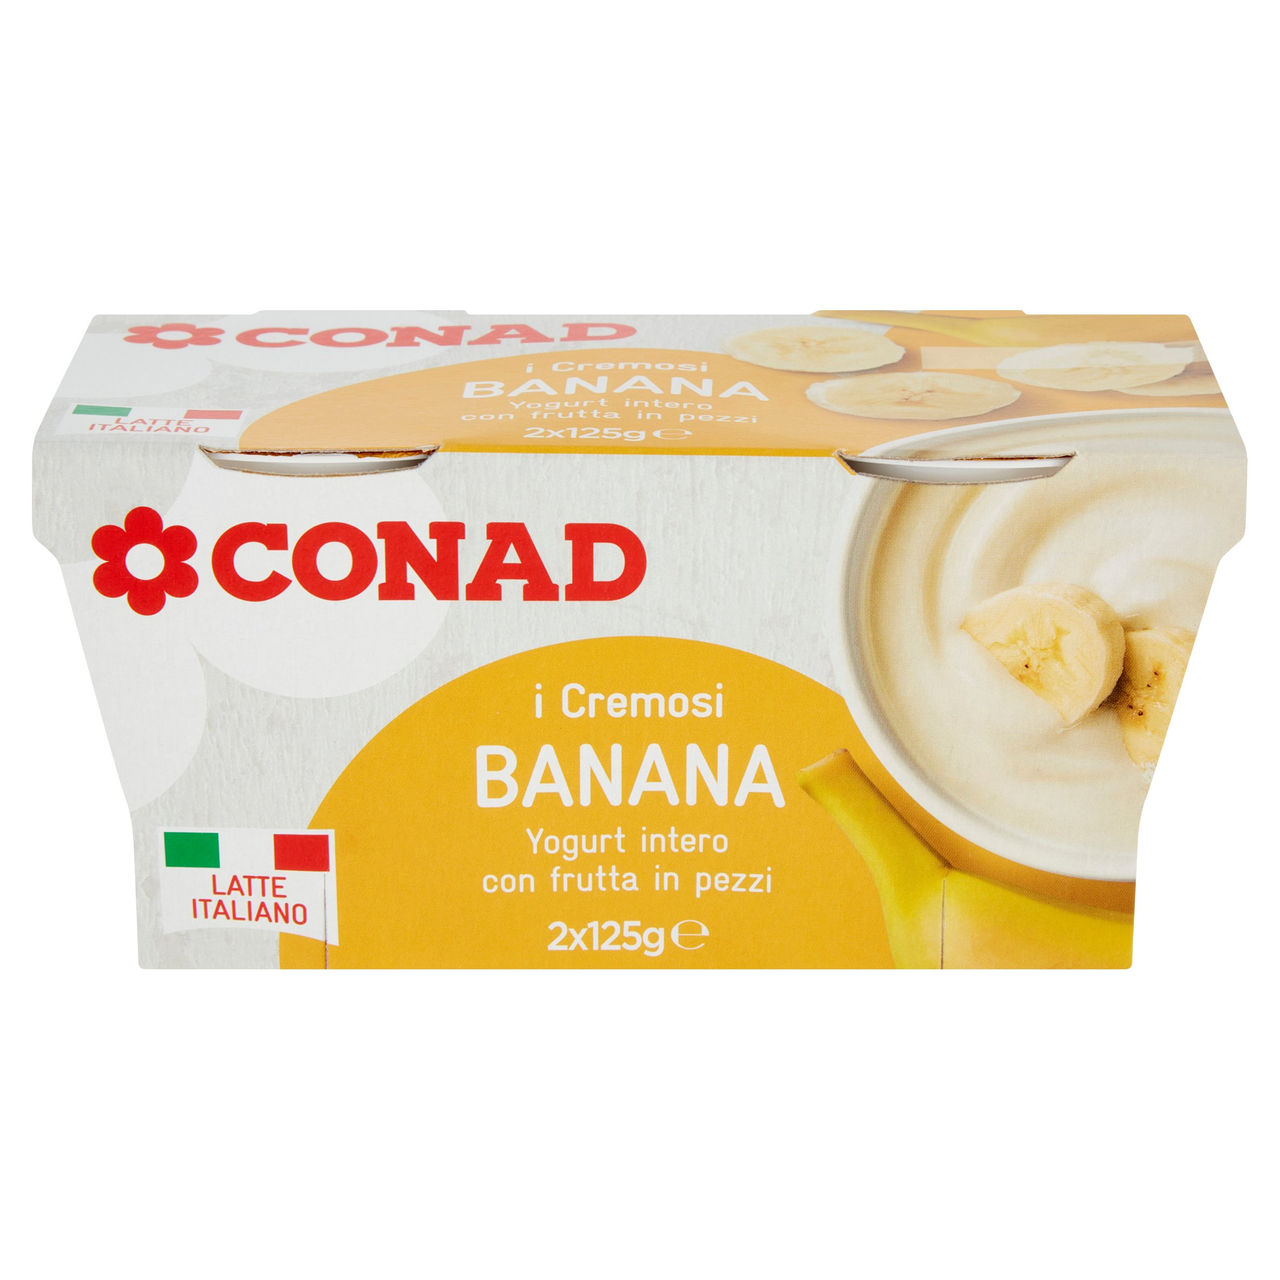 I Cremosi Yogurt intero Banana 2 x 125 g Conad